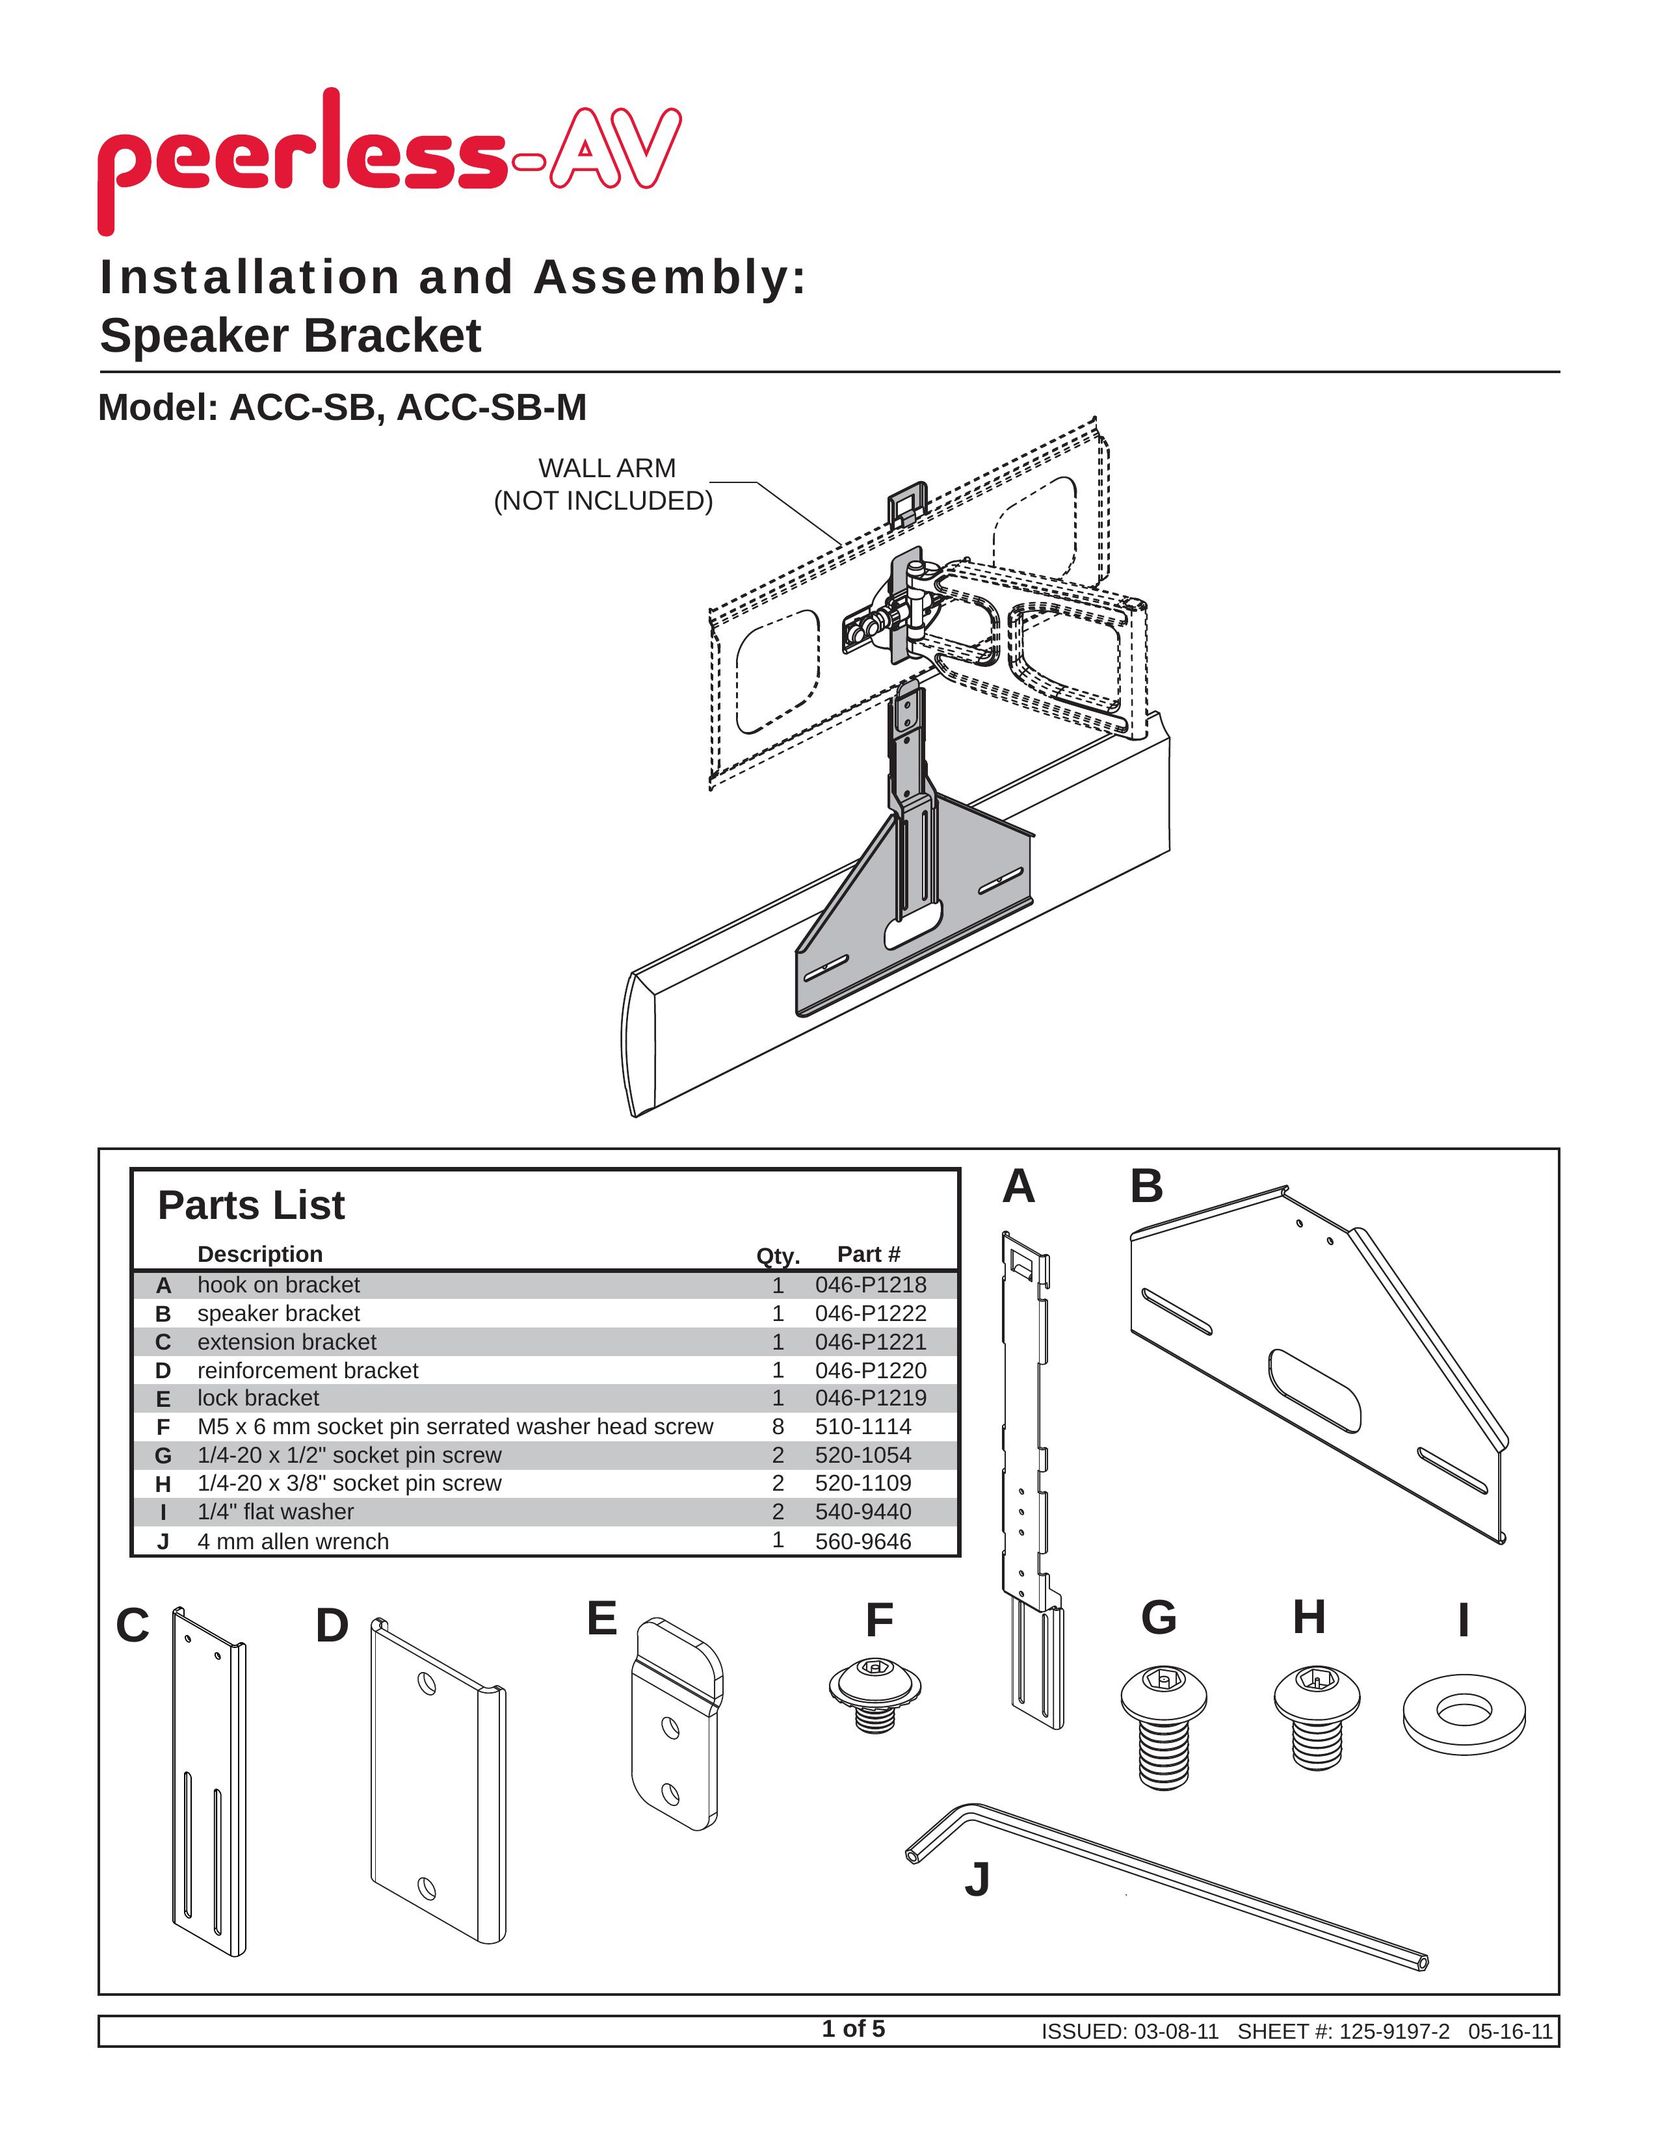 Peerless Industries ACC-SB Portable Speaker User Manual